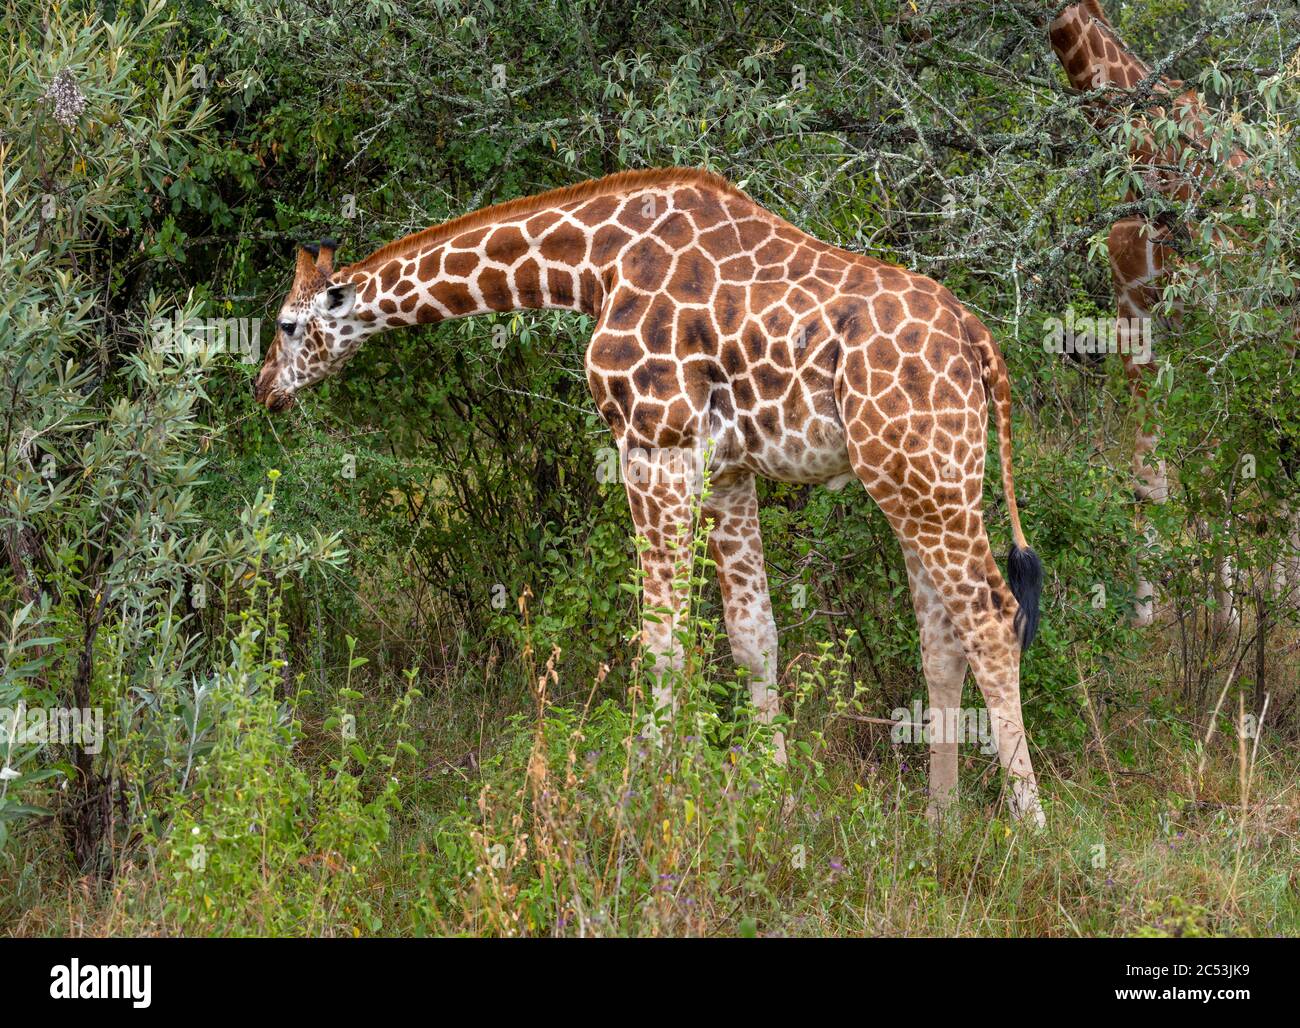 La girafe de Rothschild (Giraffa camelopardalis rothschild) se nourrissant dans le parc national du lac Nakuru, Kenya, Afrique Banque D'Images